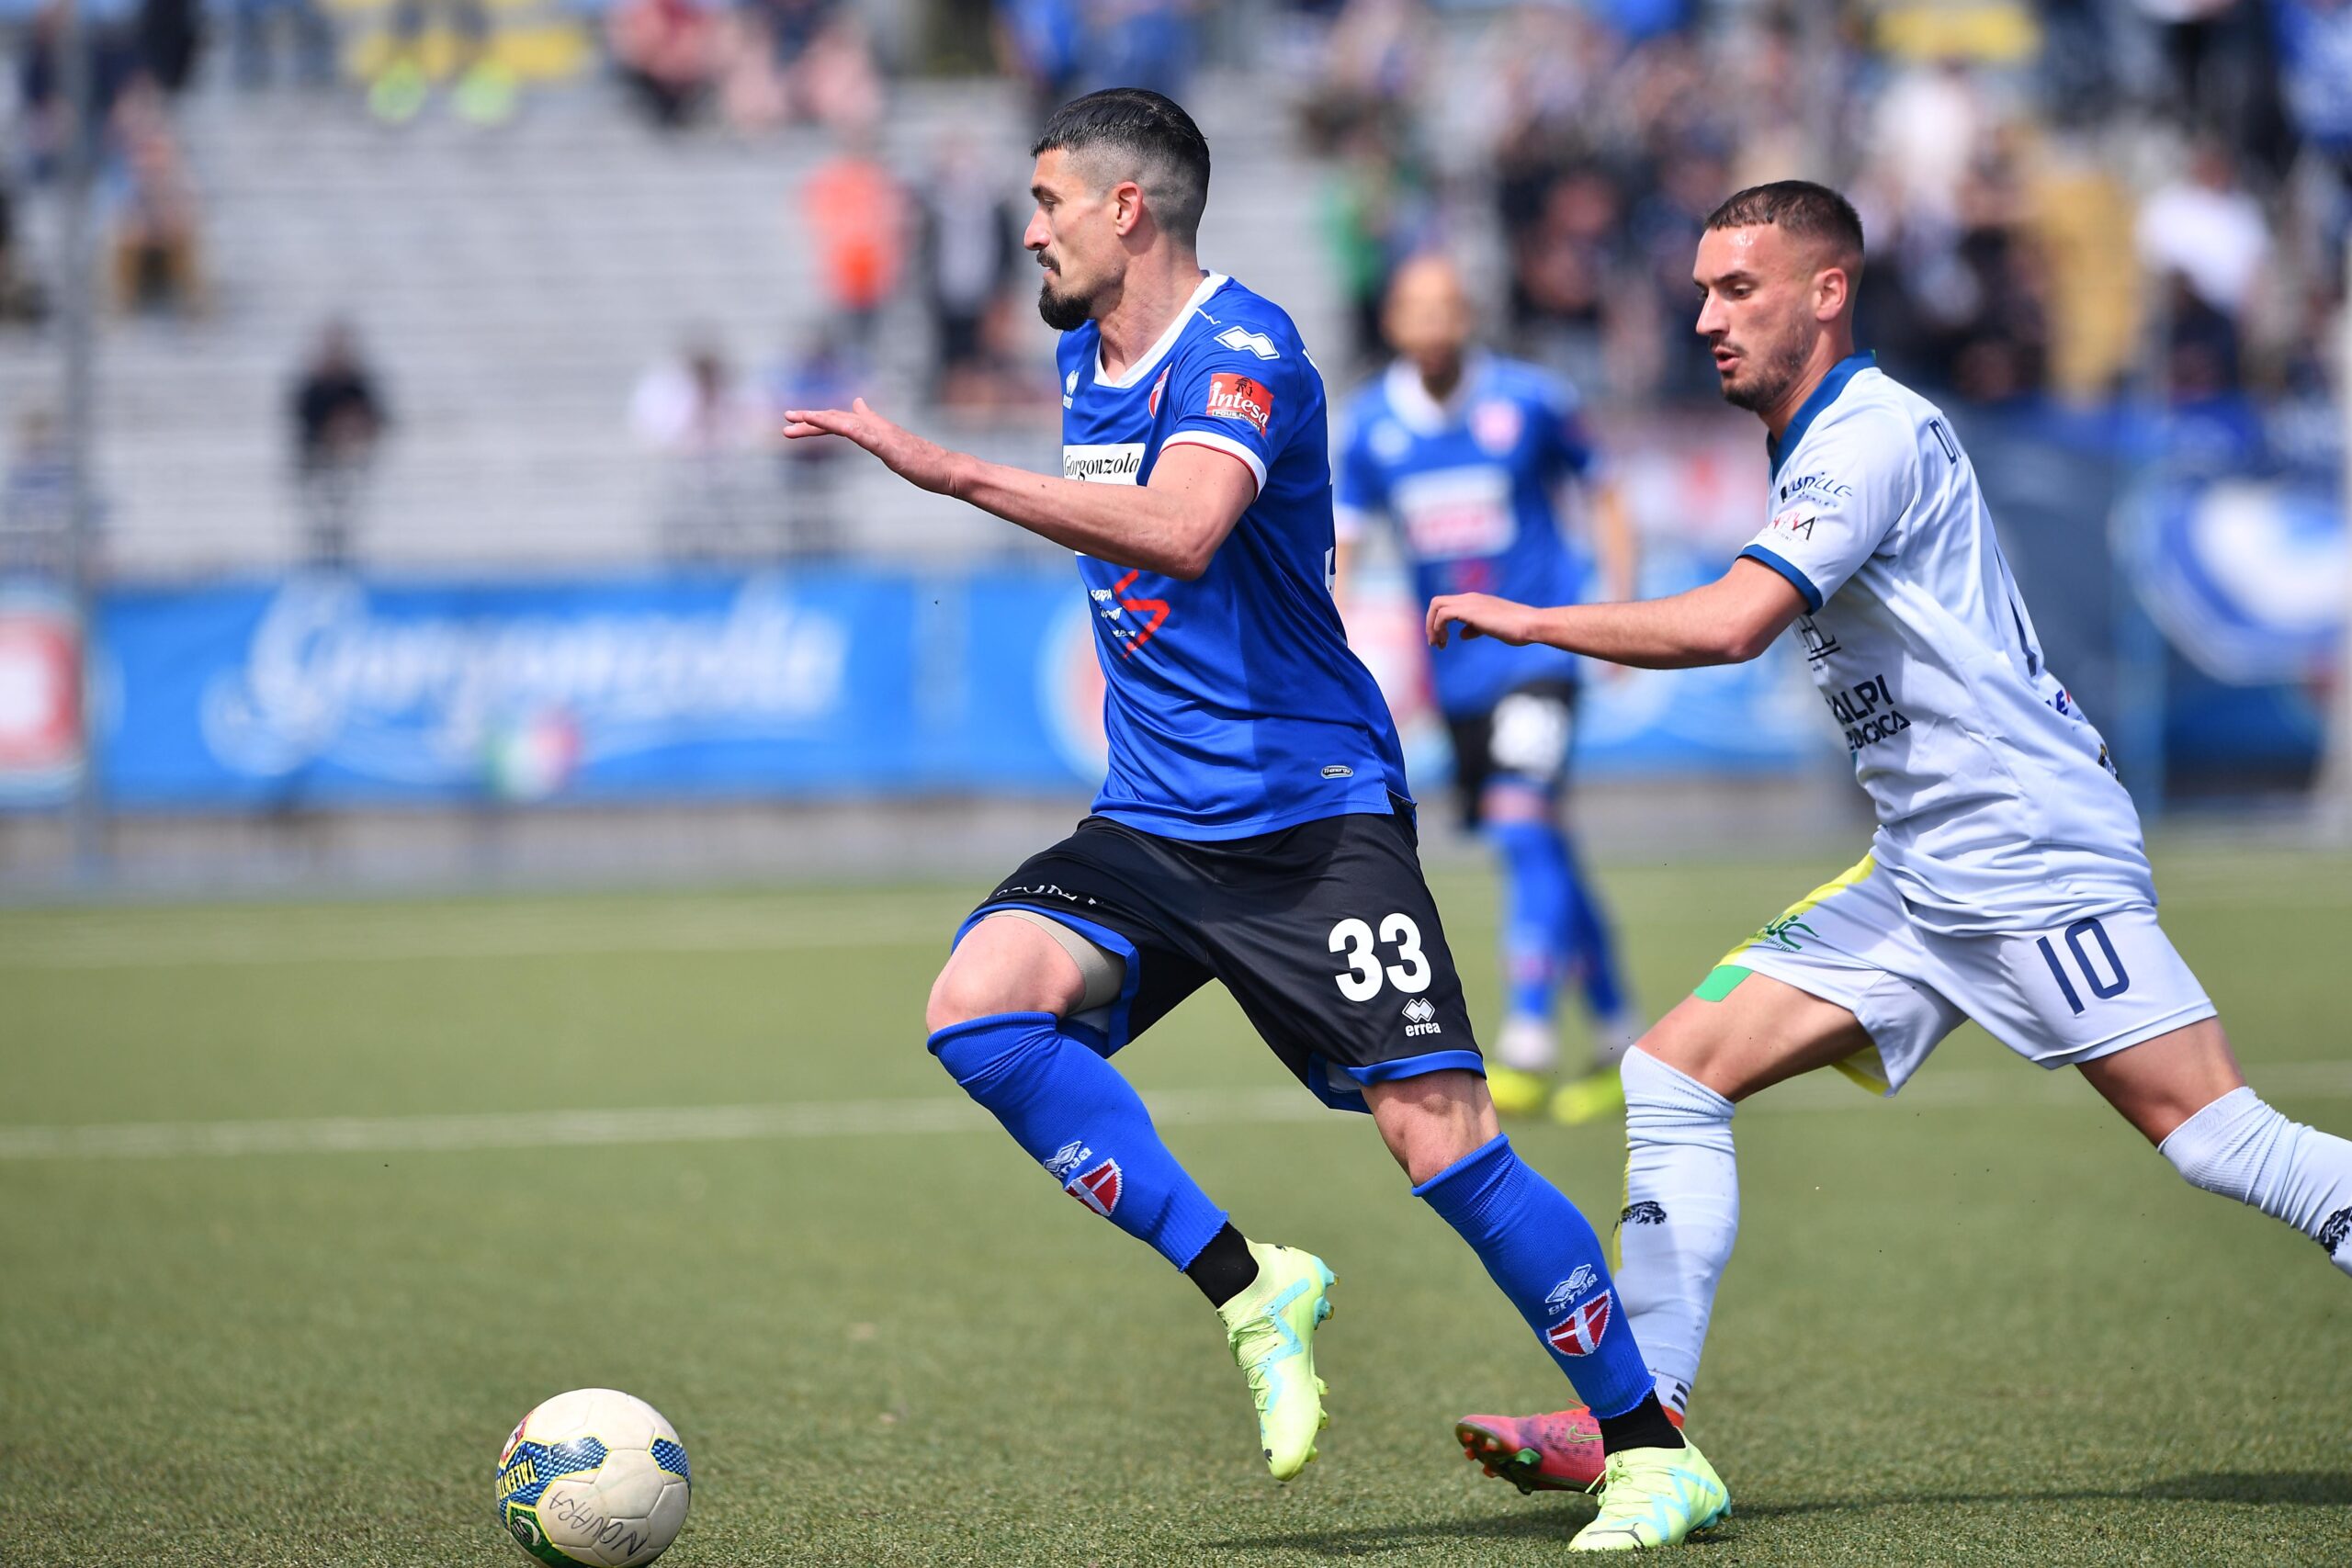 Read more about the article Novara-Feralpisalò 1-0 | Il tabellino del match